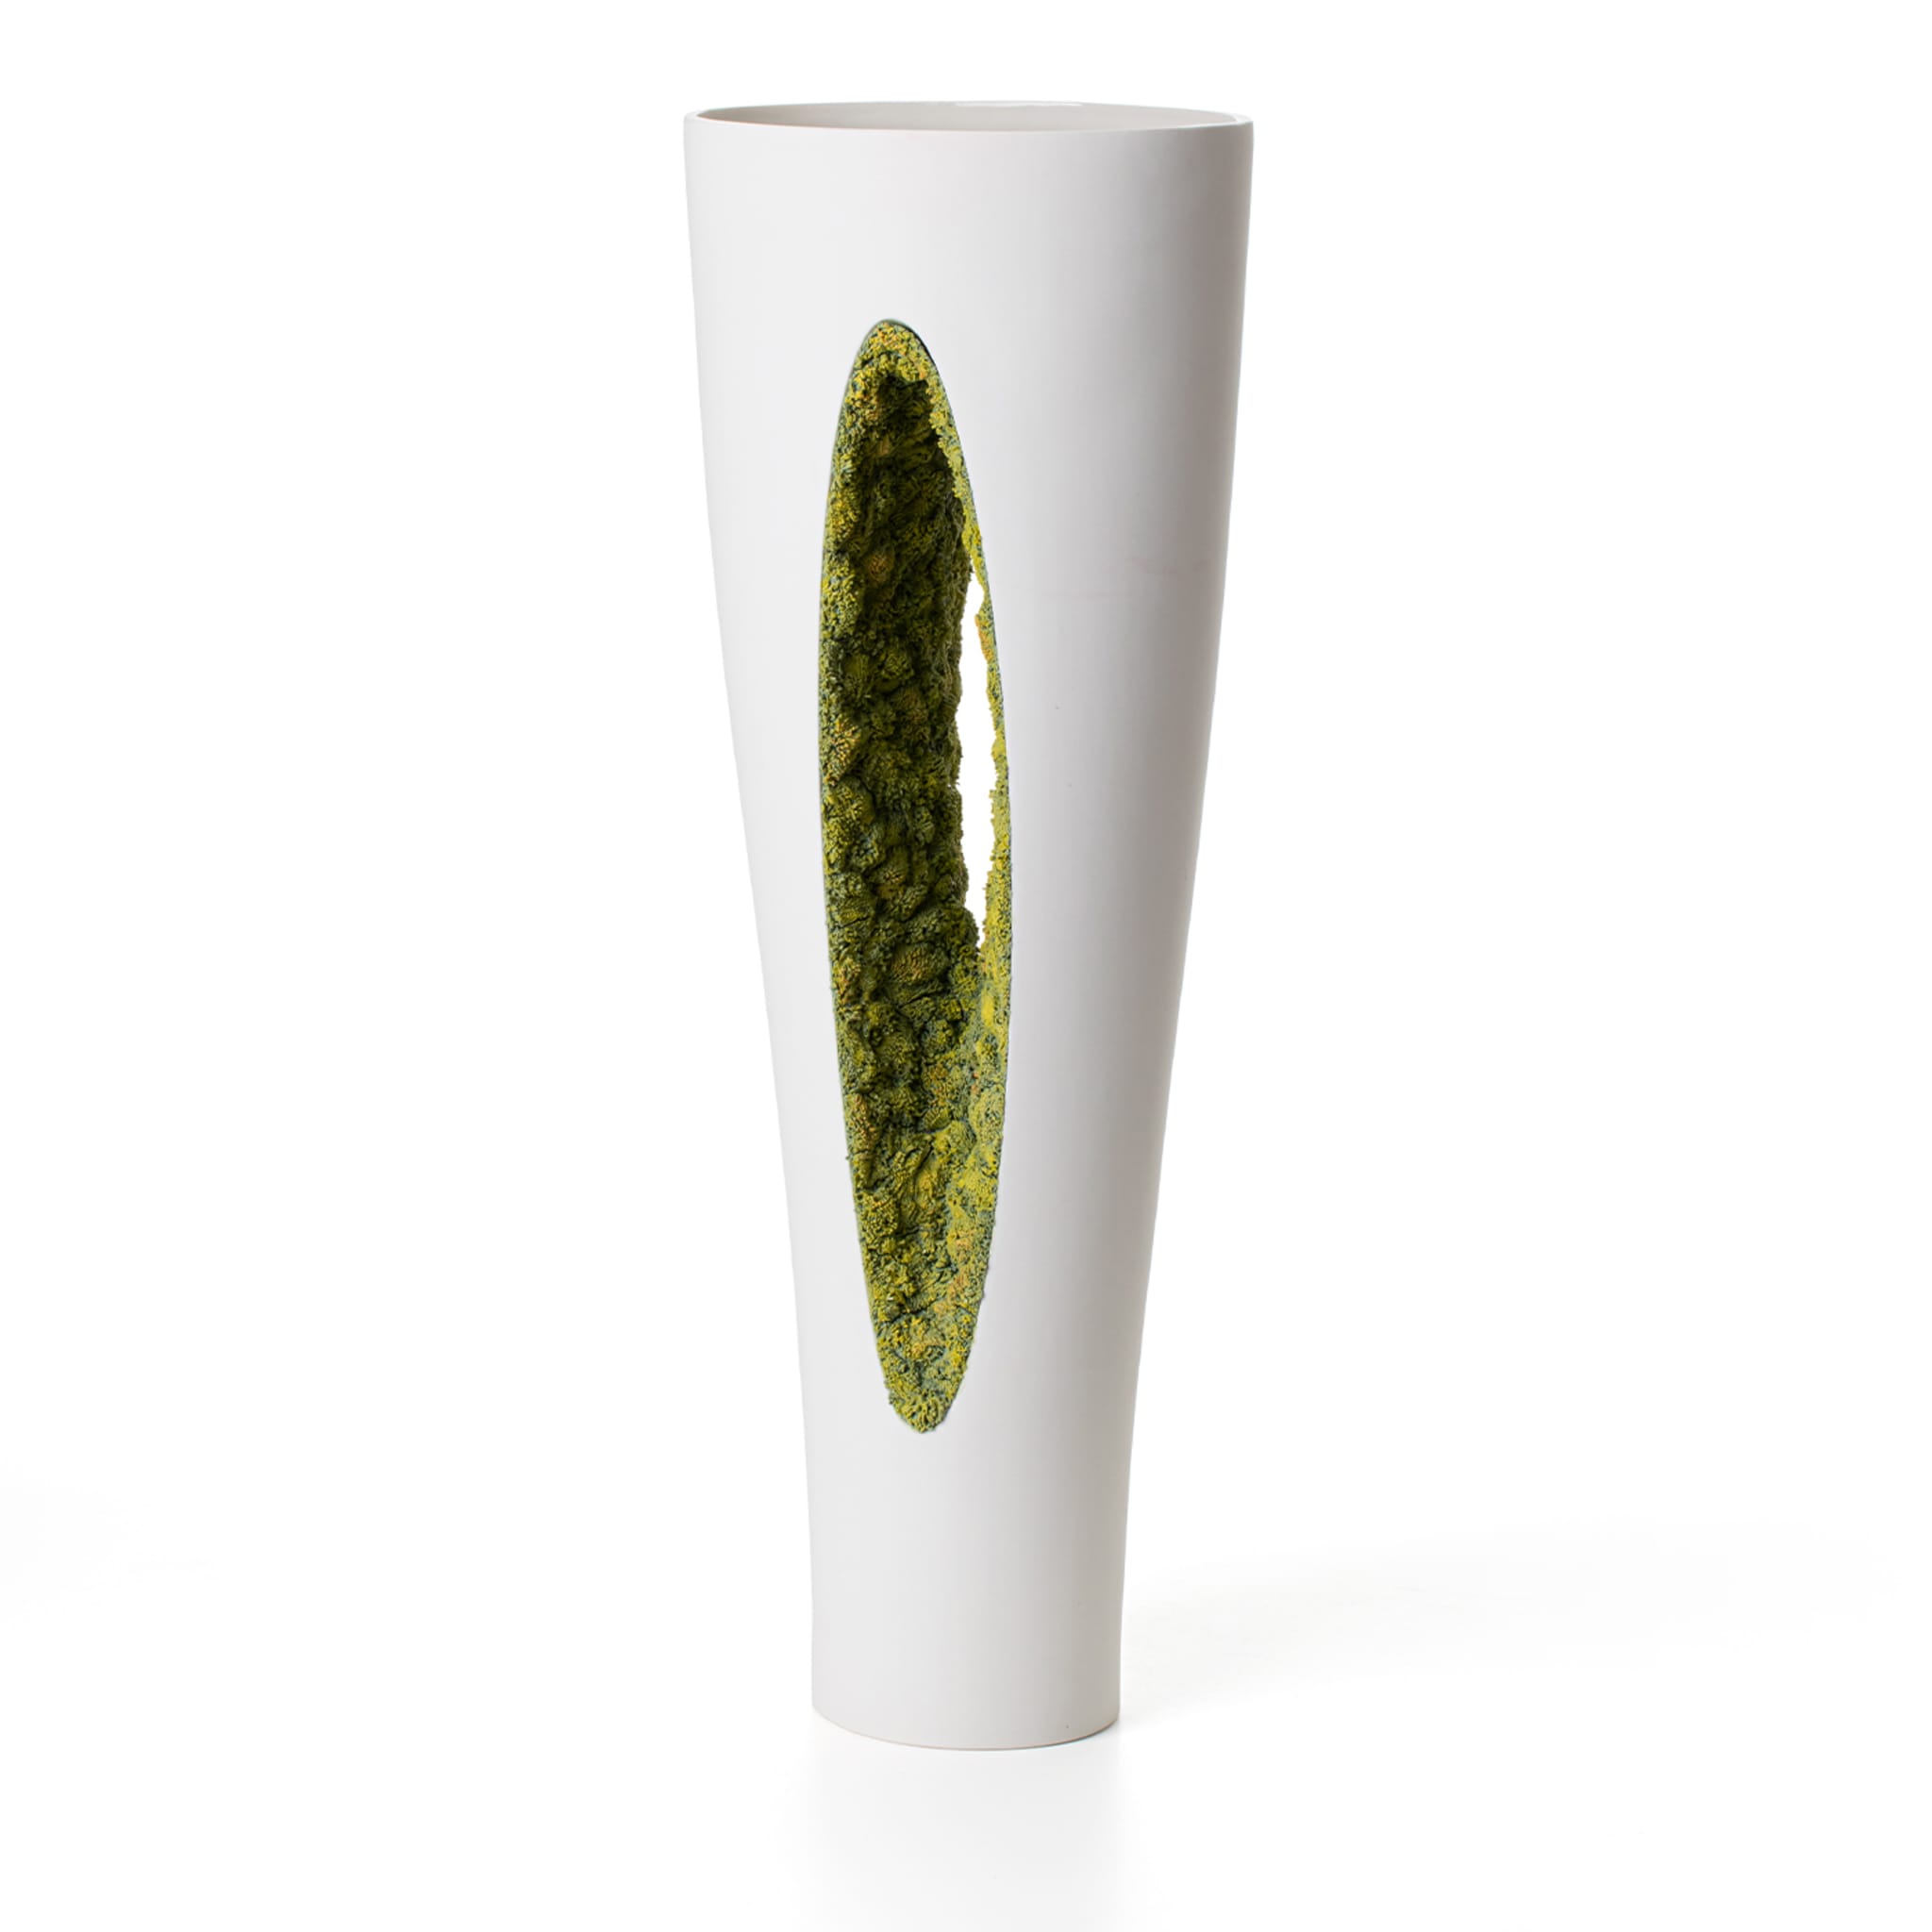 Vase mit grünem Moos von innen nach außen - Alternative Ansicht 1